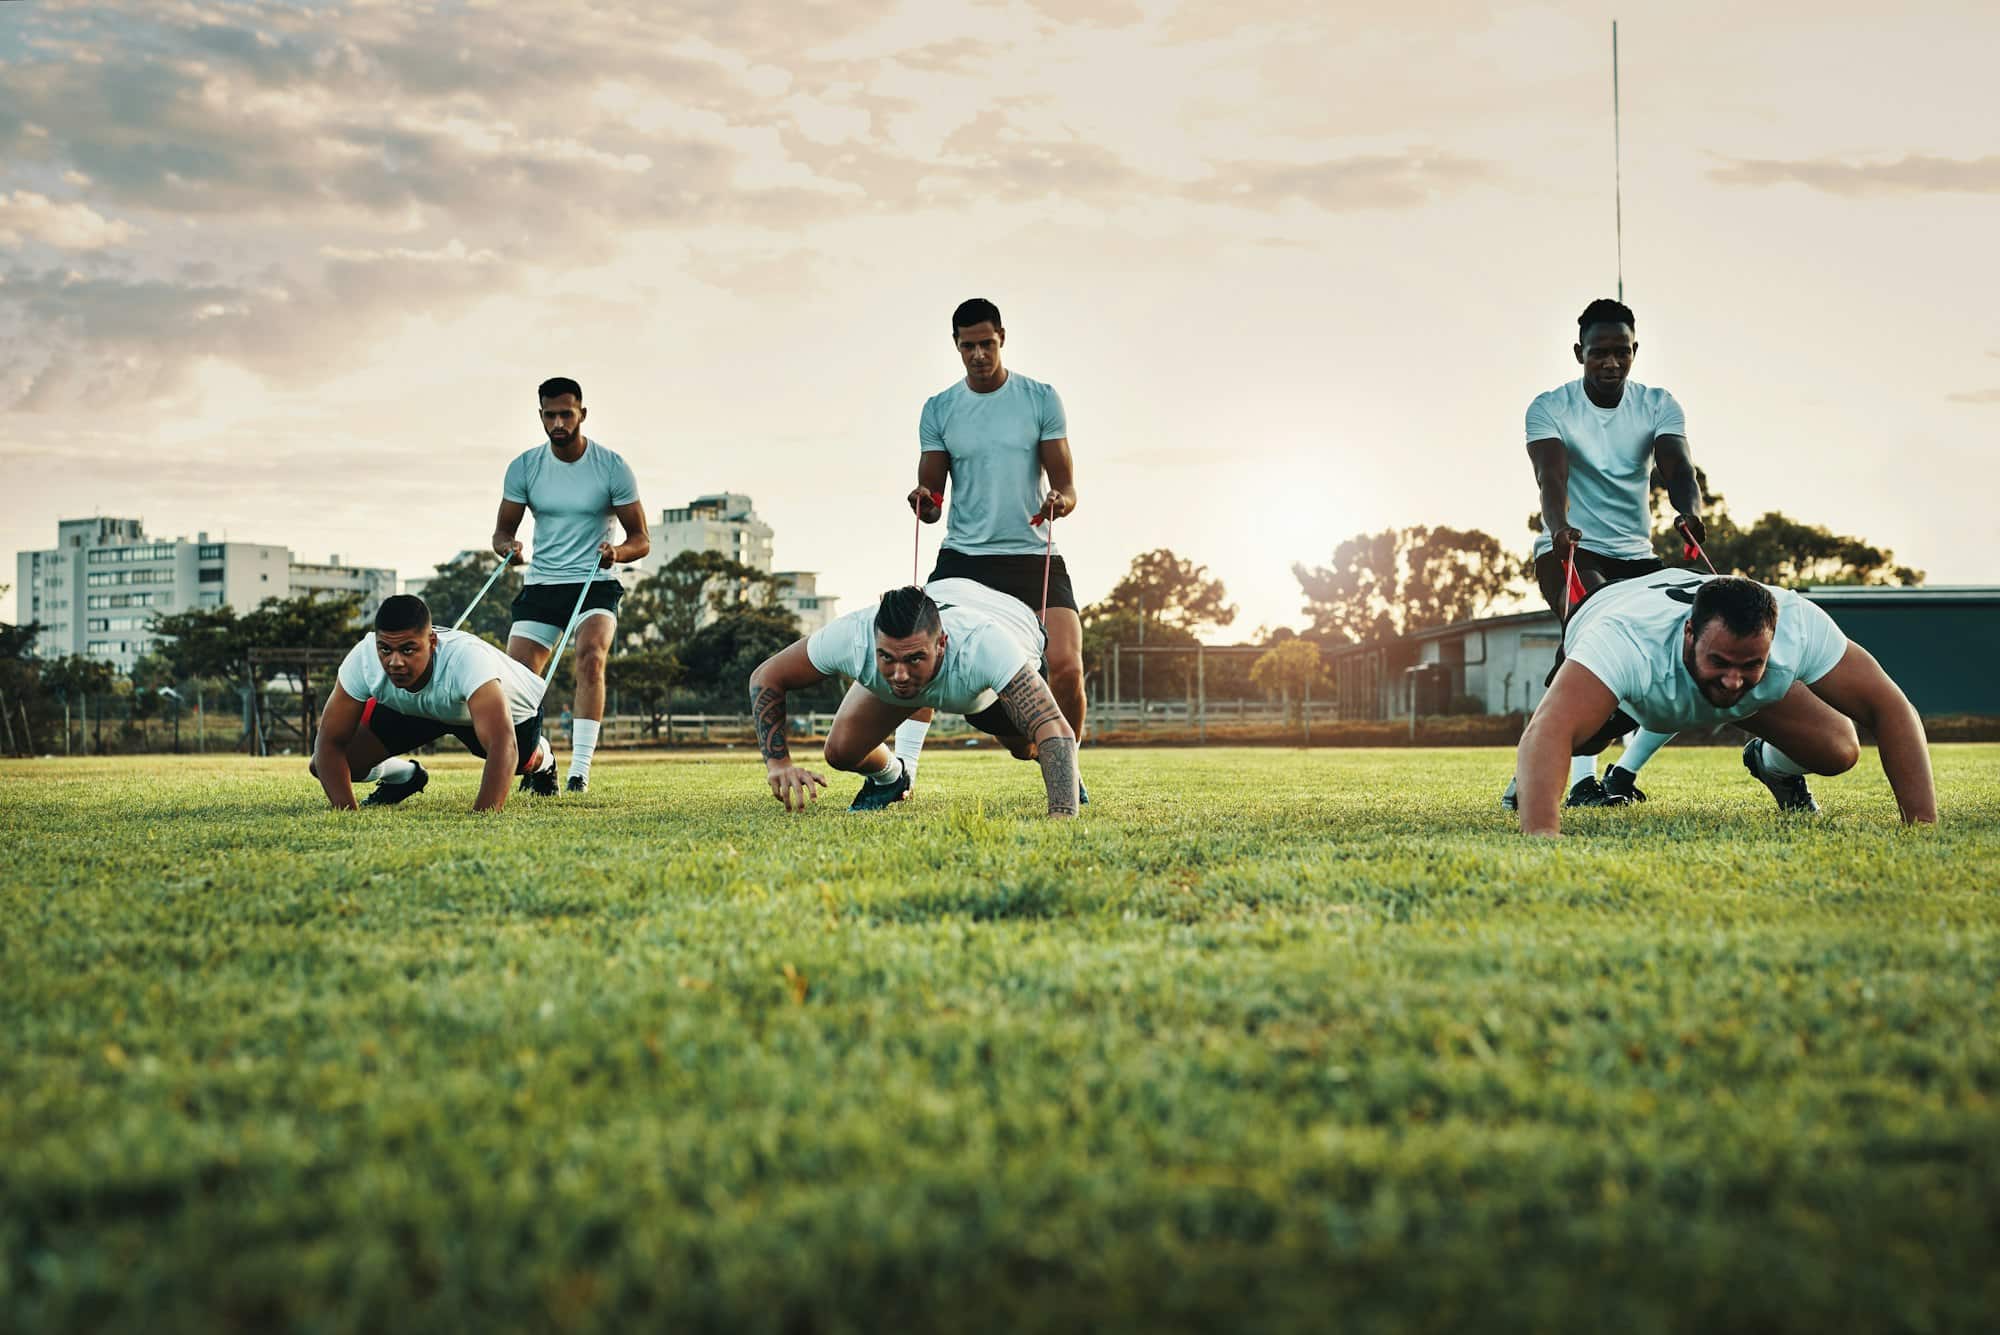 Ganzkörperaufnahme einer Gruppe junger Rugbyspieler, die tagsüber mit Bands auf dem Feld trainieren